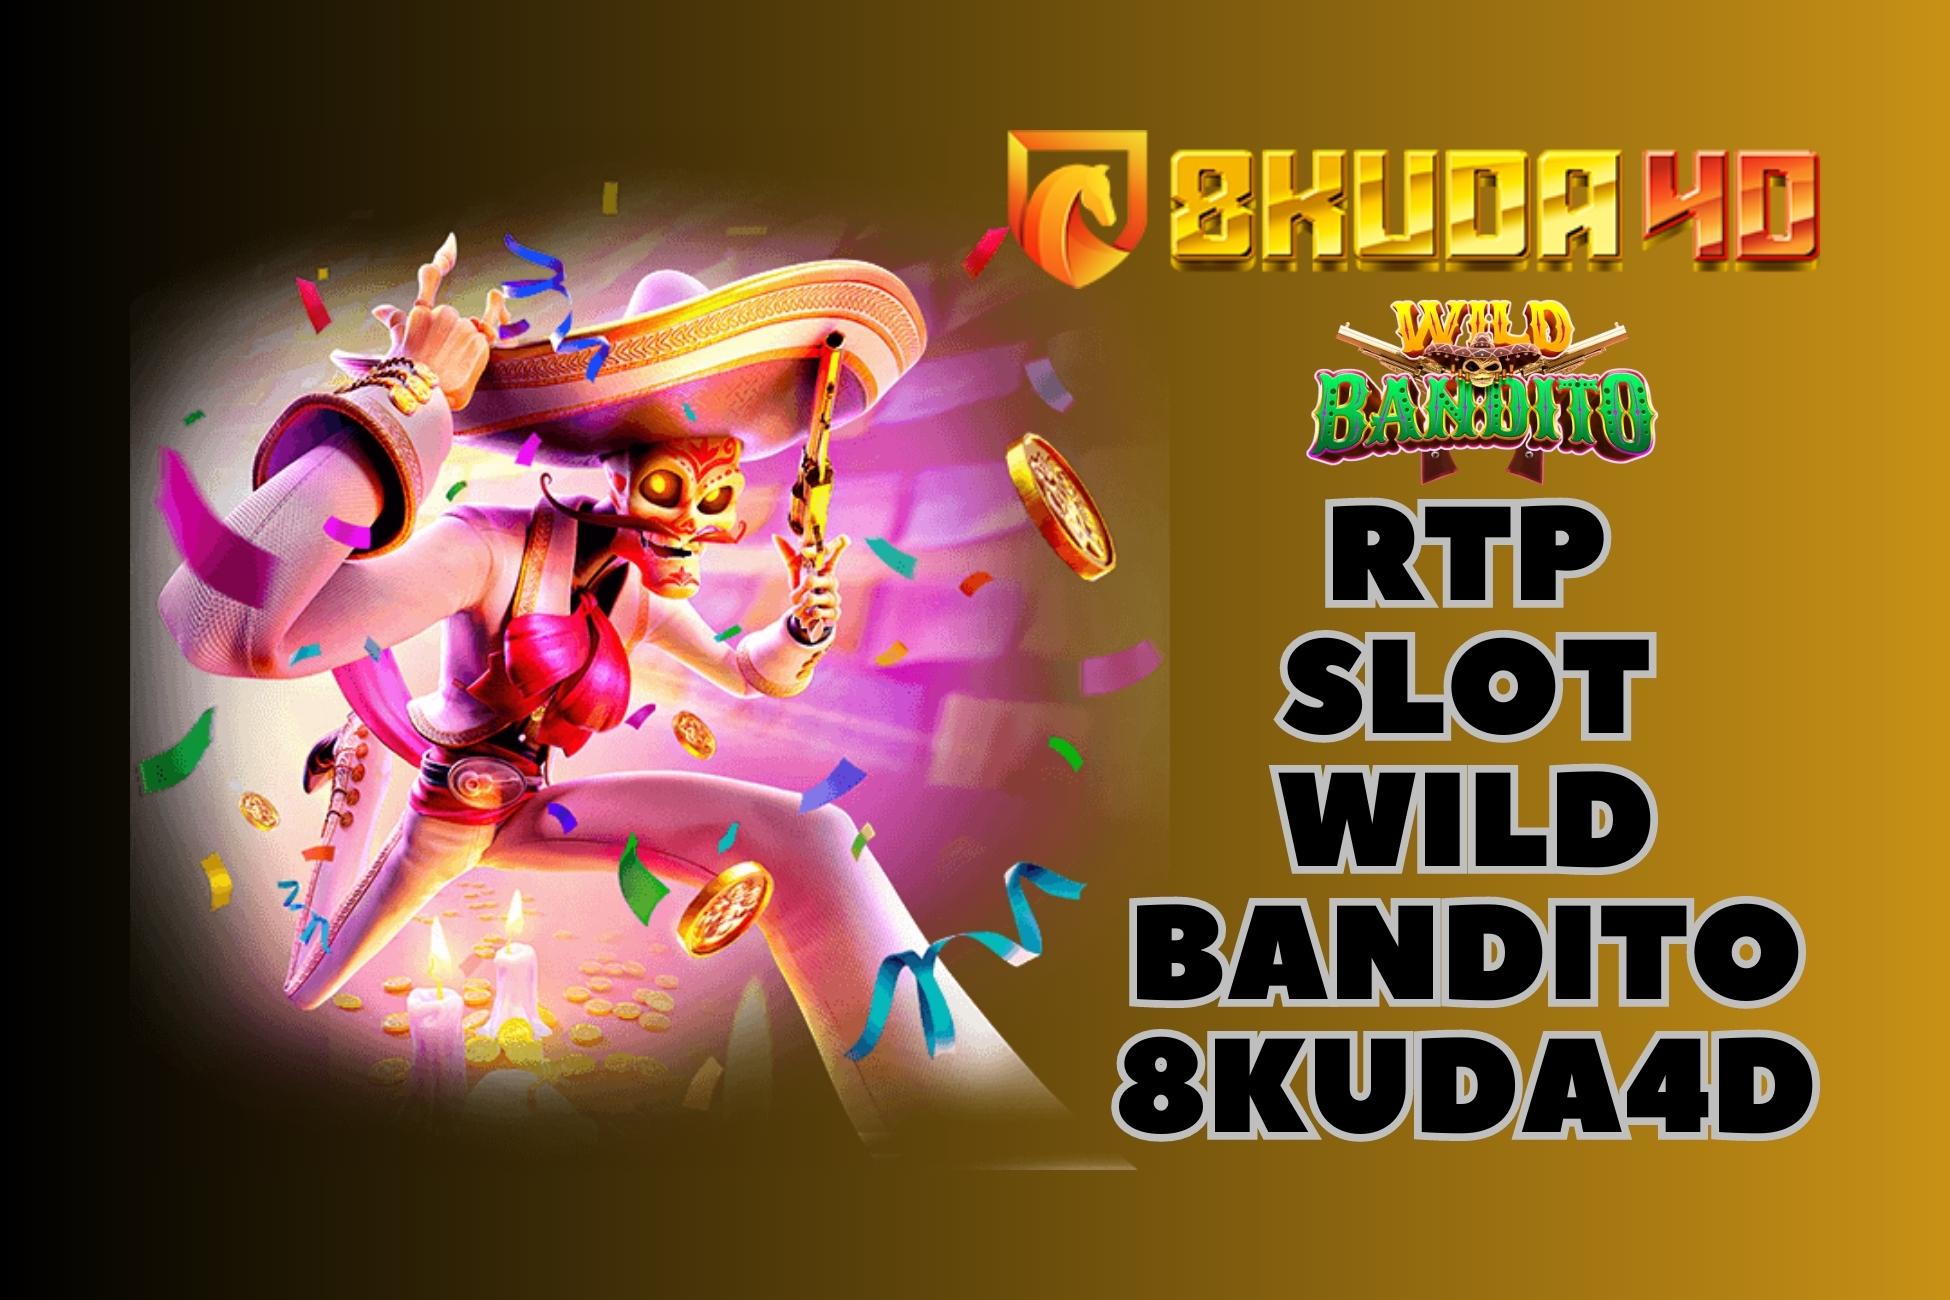 RTP Slot Wild Bandito 8Kuda4D